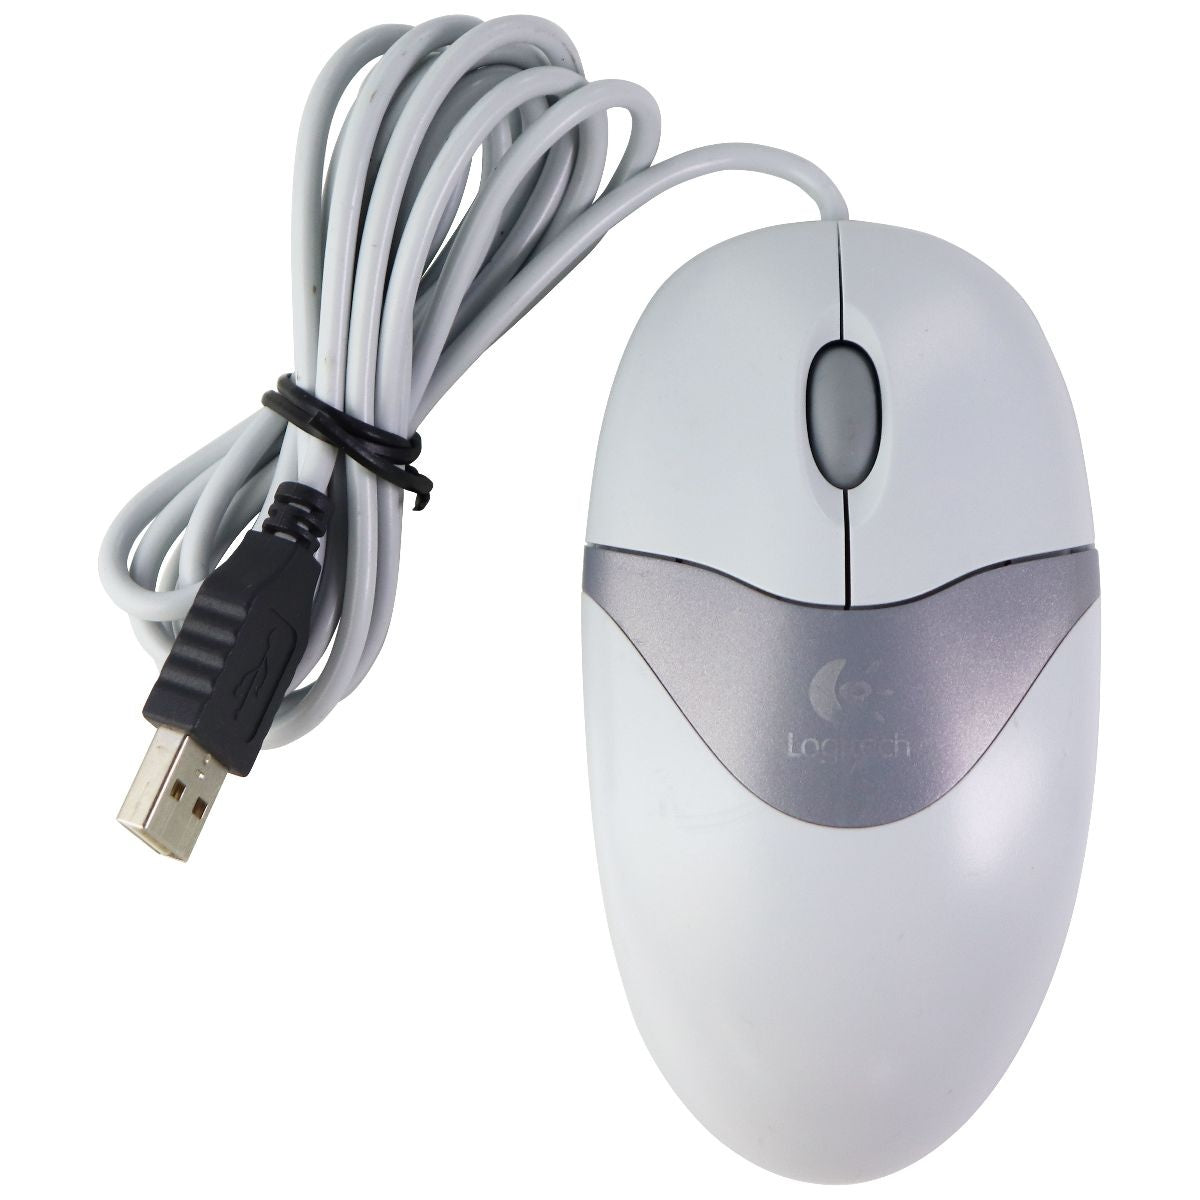 ressource at forstå ekskrementer Logitech USB Wired Optical Mouse for Windows PC & More - Gray (M-BT96a